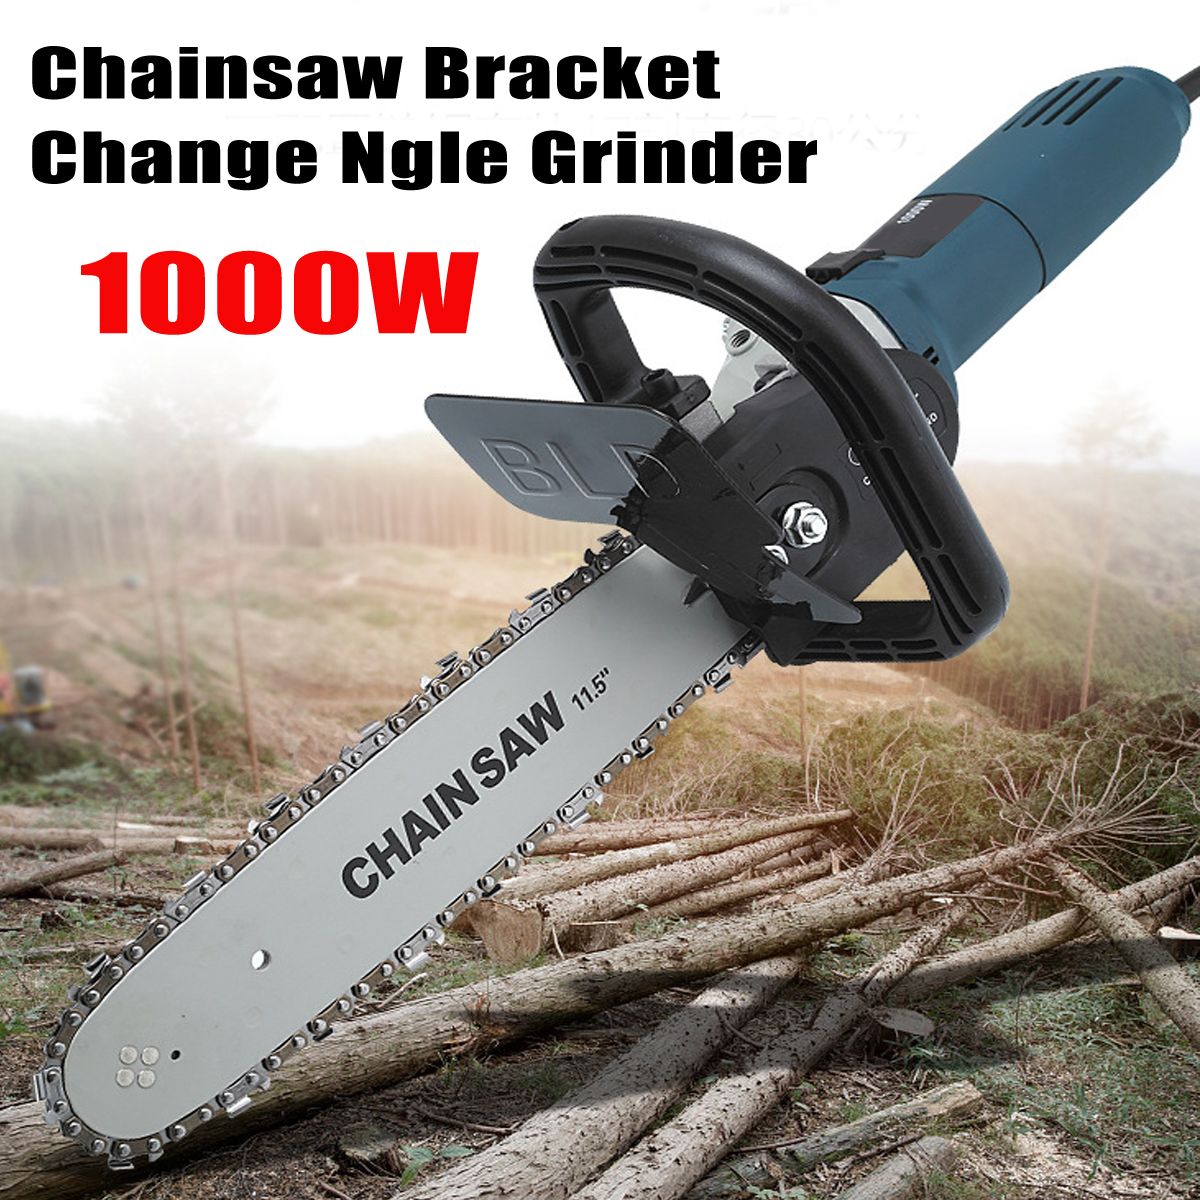 11000rmin-220V-1000W-Electric-Angle-Grinder-Chainsaw-Bracket-DIY-Cutting-Tools-1261962